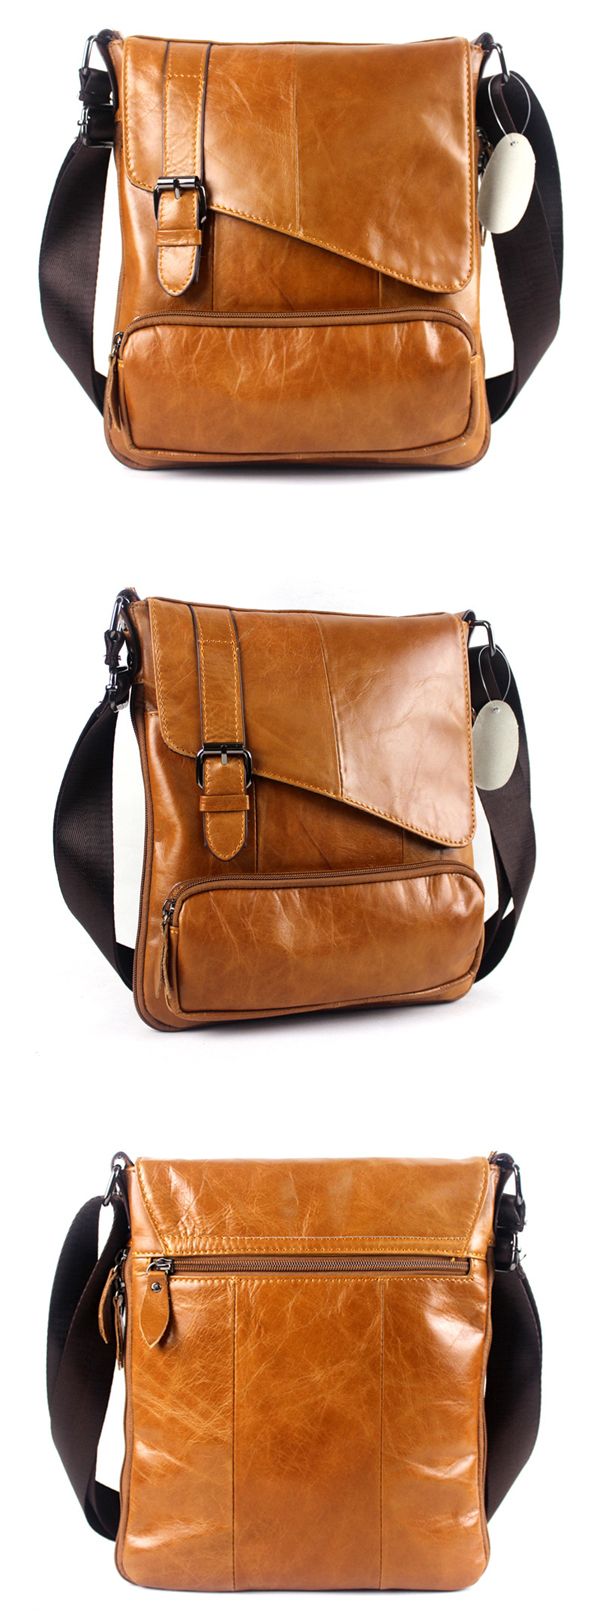 Genuine-Leather-Big-Capacity-Shoulder-Bag-Leisure-Crossbody-Bag-Message-Bag-For-Men-1121736